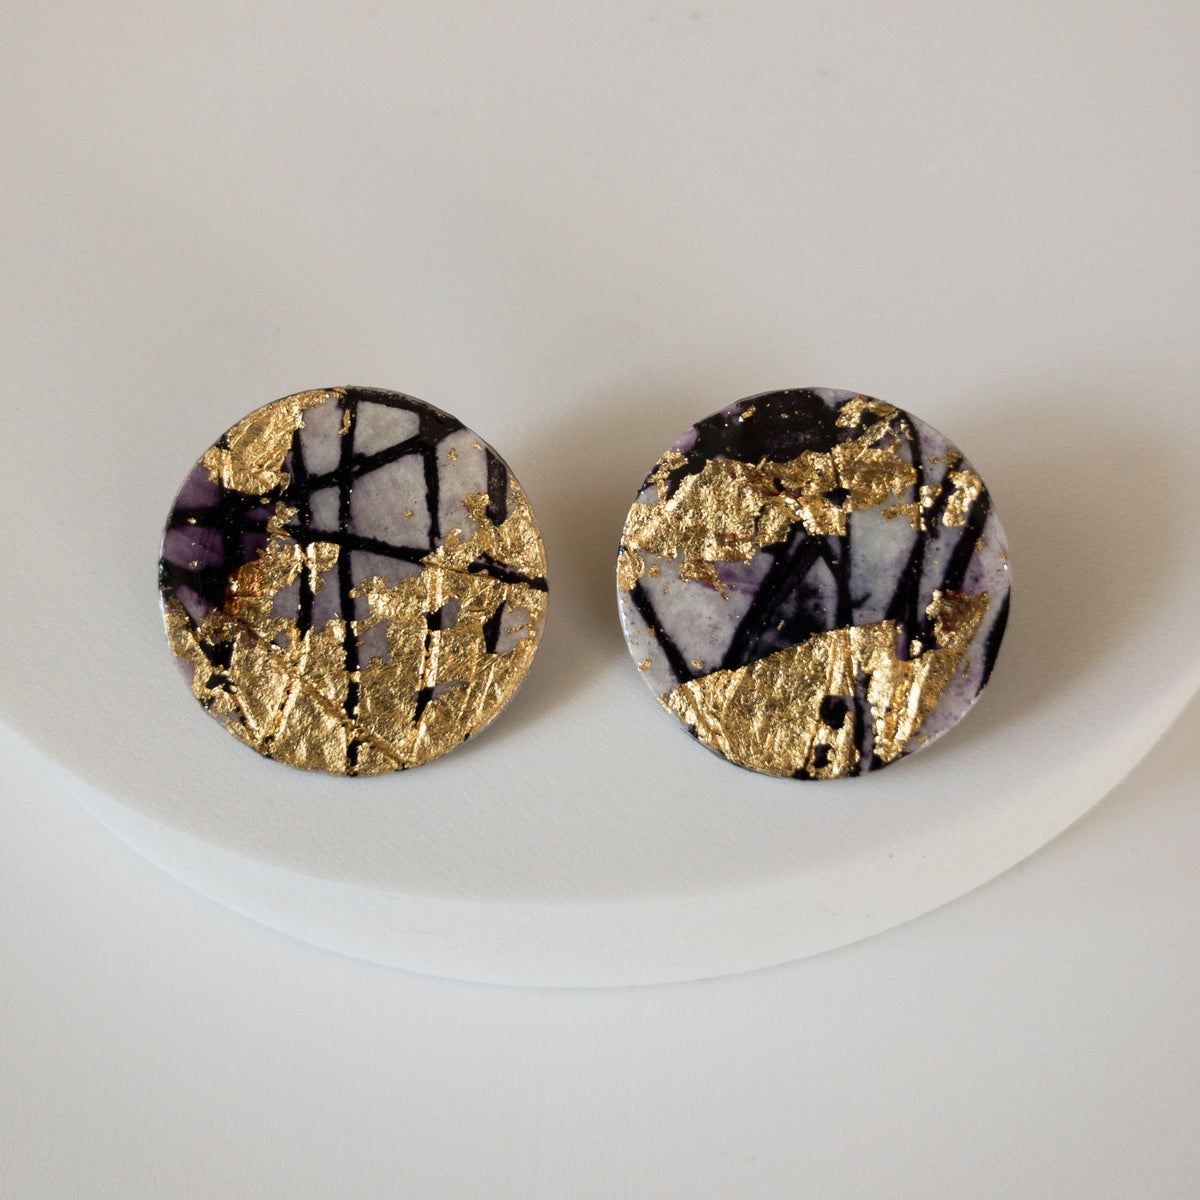 Ró sgraffito earrings in gold/black